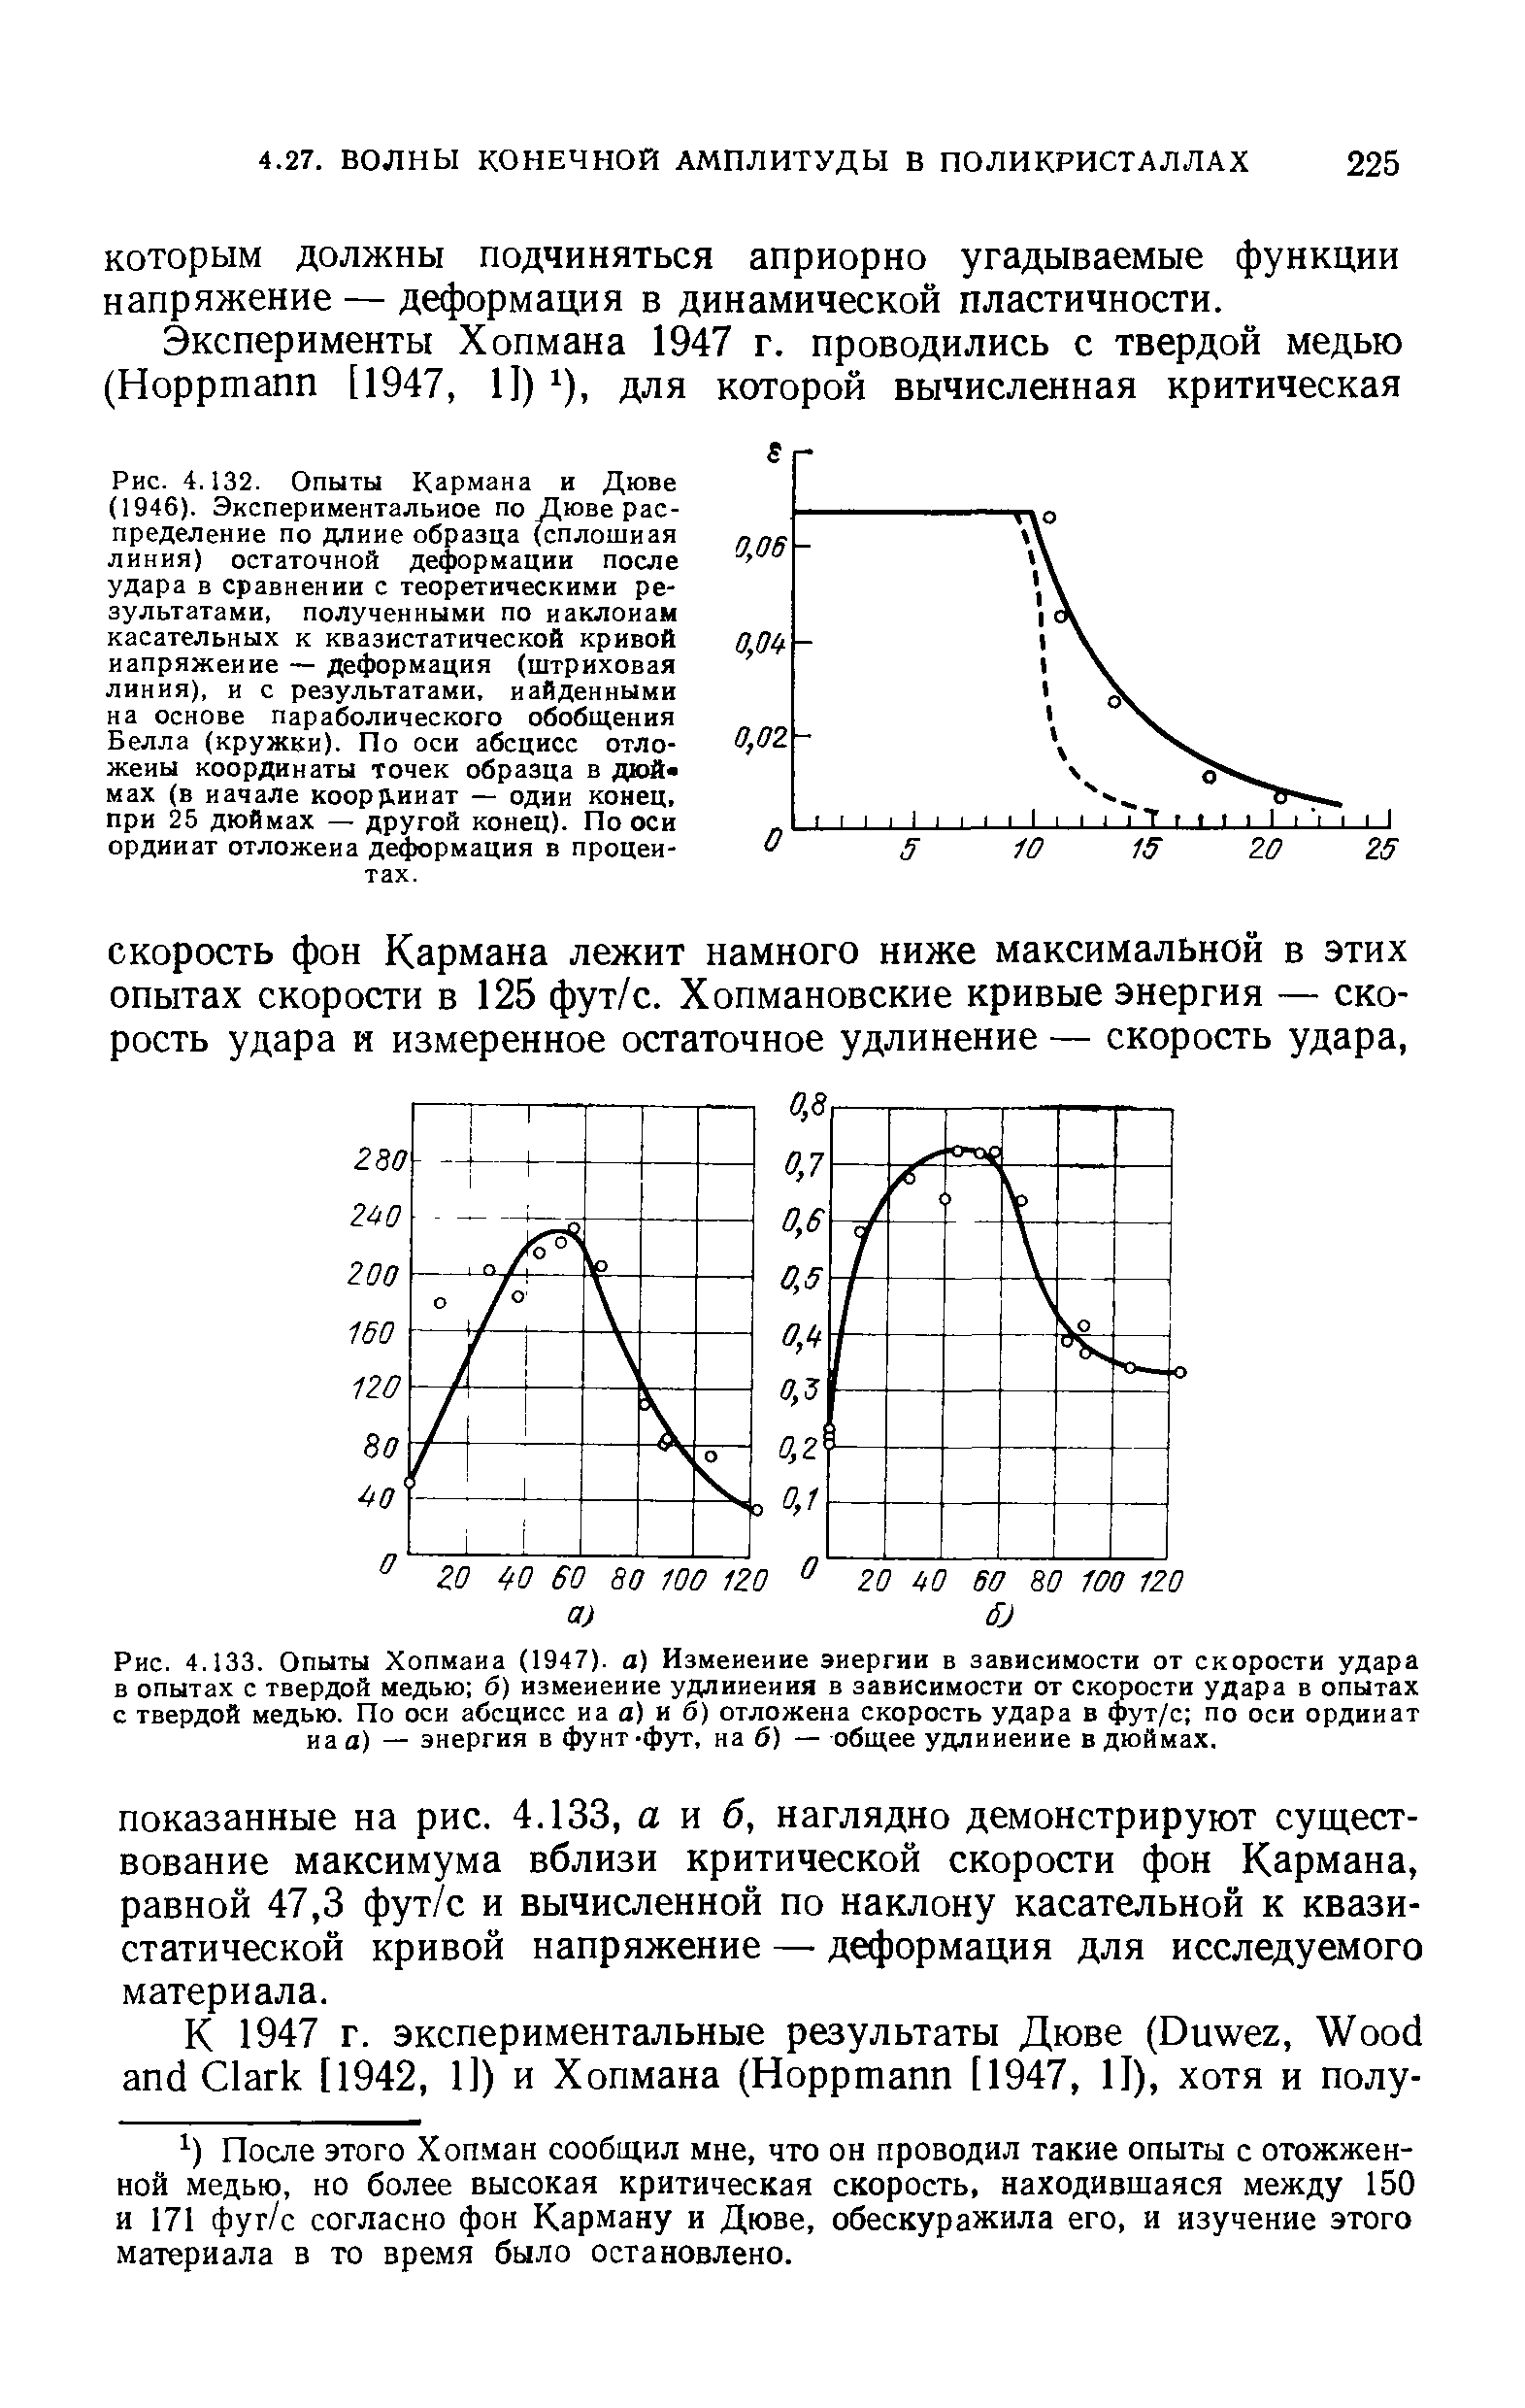 Рис. 4.133. Опыты Хопмаиа (1947). а) Измеиеиие энергии в зависимости от скорости удара в опытах с твердой медью б) измеиеиие удлинения в зависимости от скорости удара в опытах с твердой медью. По оси абсцисс иа а) и б) отложена скорость удара в фут/с по оси ординат на а) — энергия в фунт-фут, на б) — общее удлинение в дюймах.
